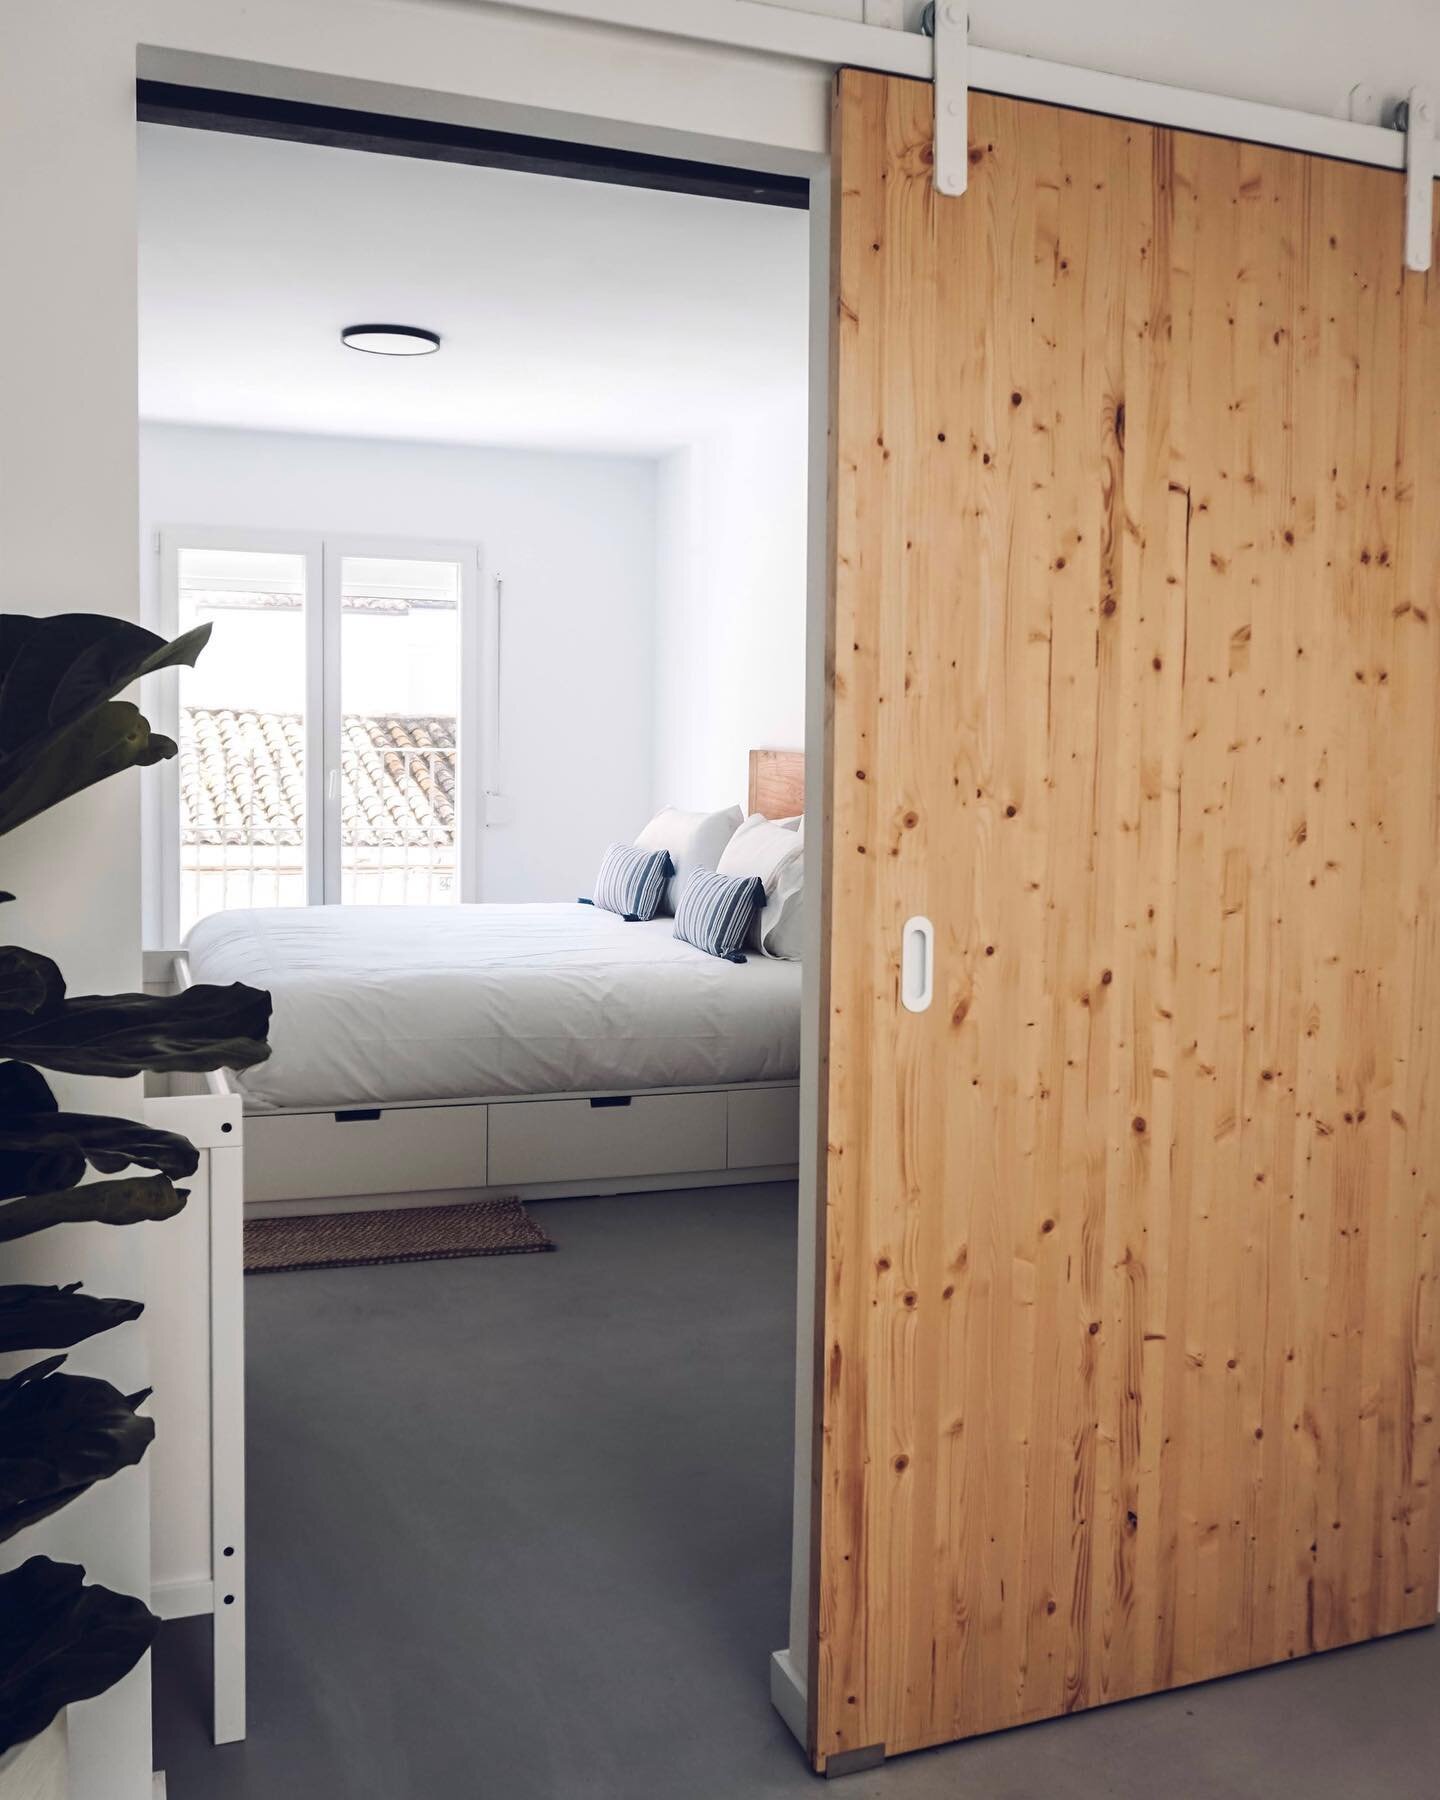 En este proyecto combinamos el blanco, negro y una escala de grises, con elementos c&aacute;lidos de madera natural

#baobabarquitectura #arquitectura #architecture #archilover #archidaily #newhouse #home #design #spain #valencia